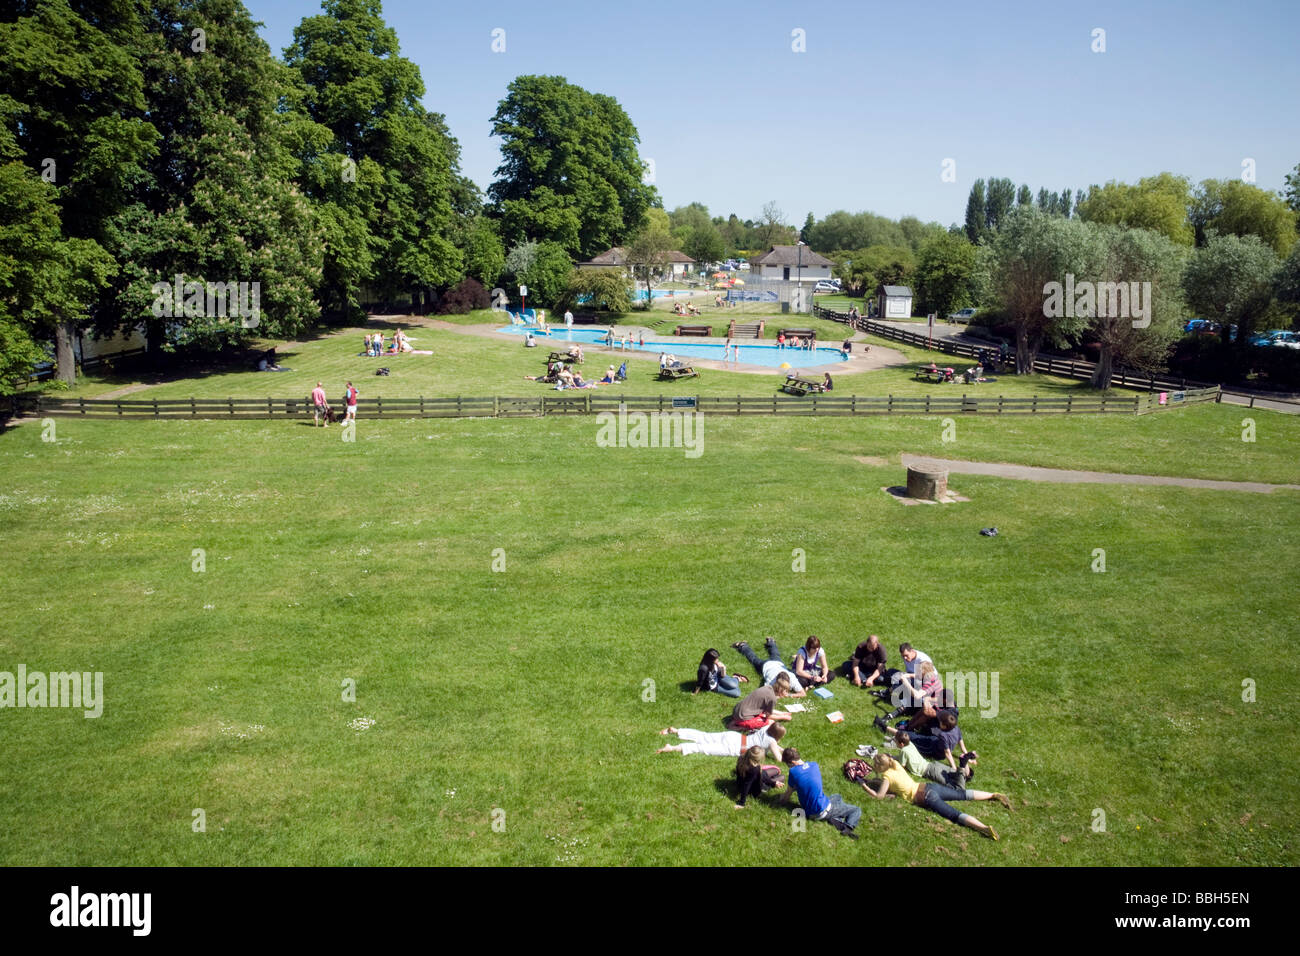 Park UK; Families enjoying the sunshine in the park, Wallingford, Oxfordshire, UK; example of UK lifestyle Stock Photo